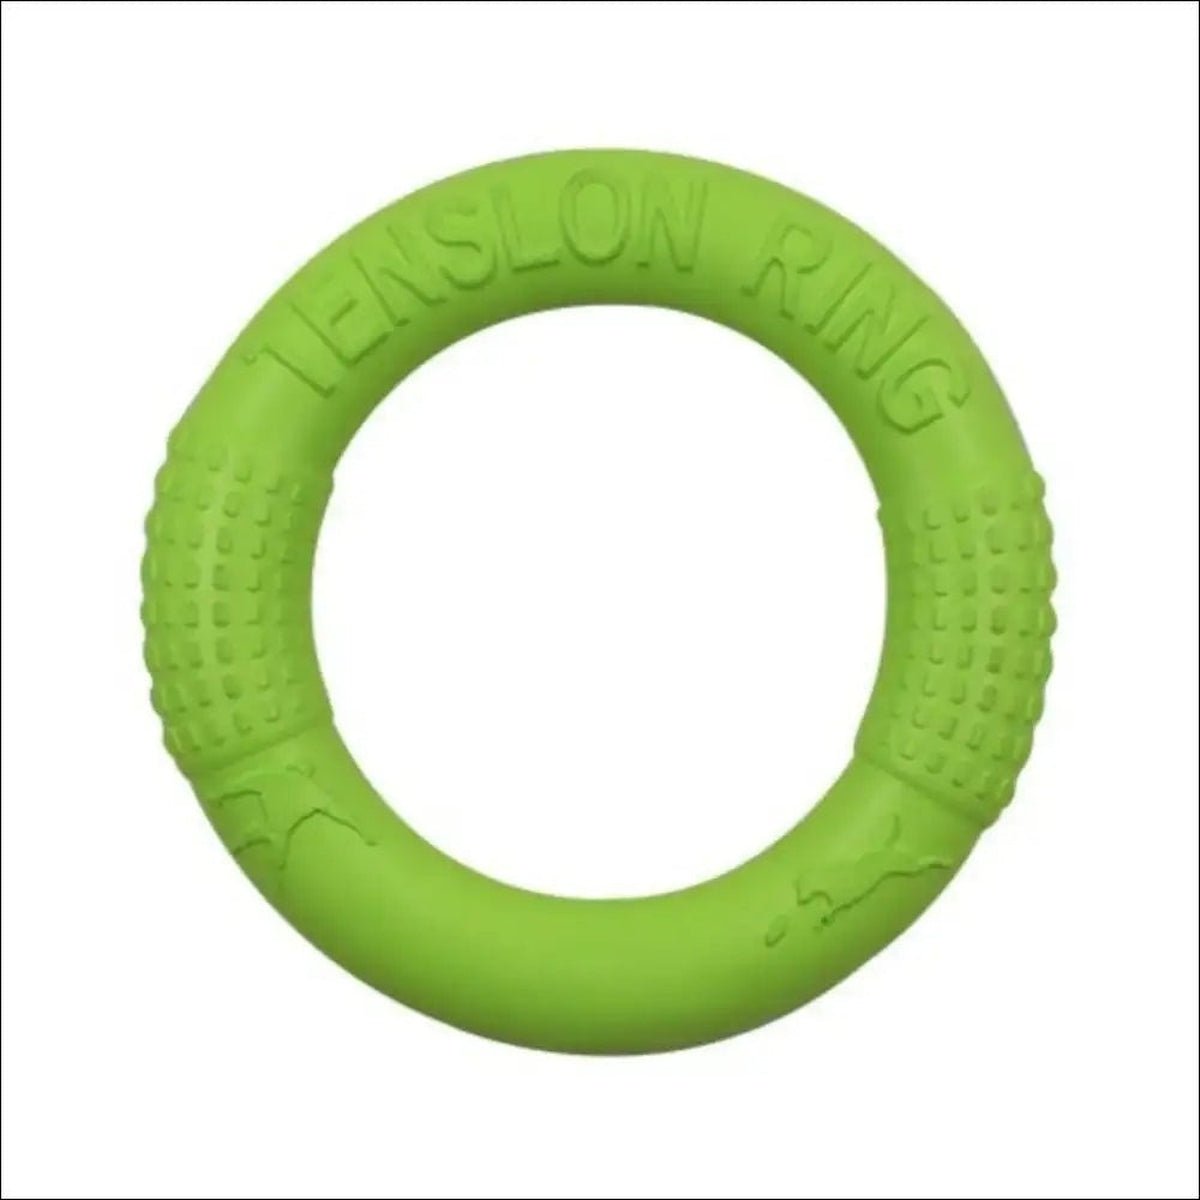 Jouet Indestructible Floatringer Pour Chien - CJJJCWGY01977 - Green - S - Frisbee - Chienalafolie